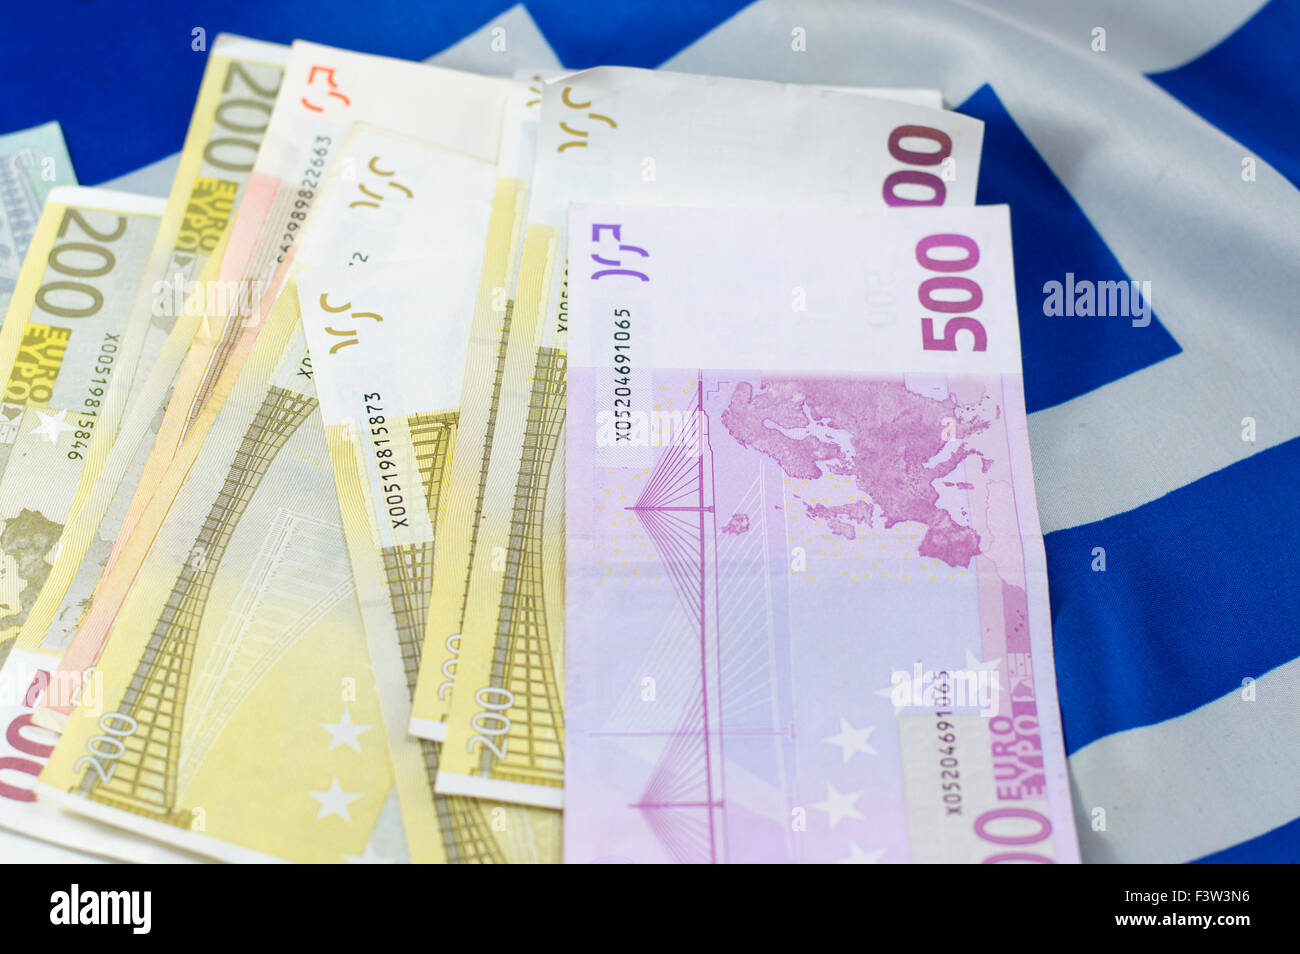 Billets empilées sur le drapeau grec Banque D'Images